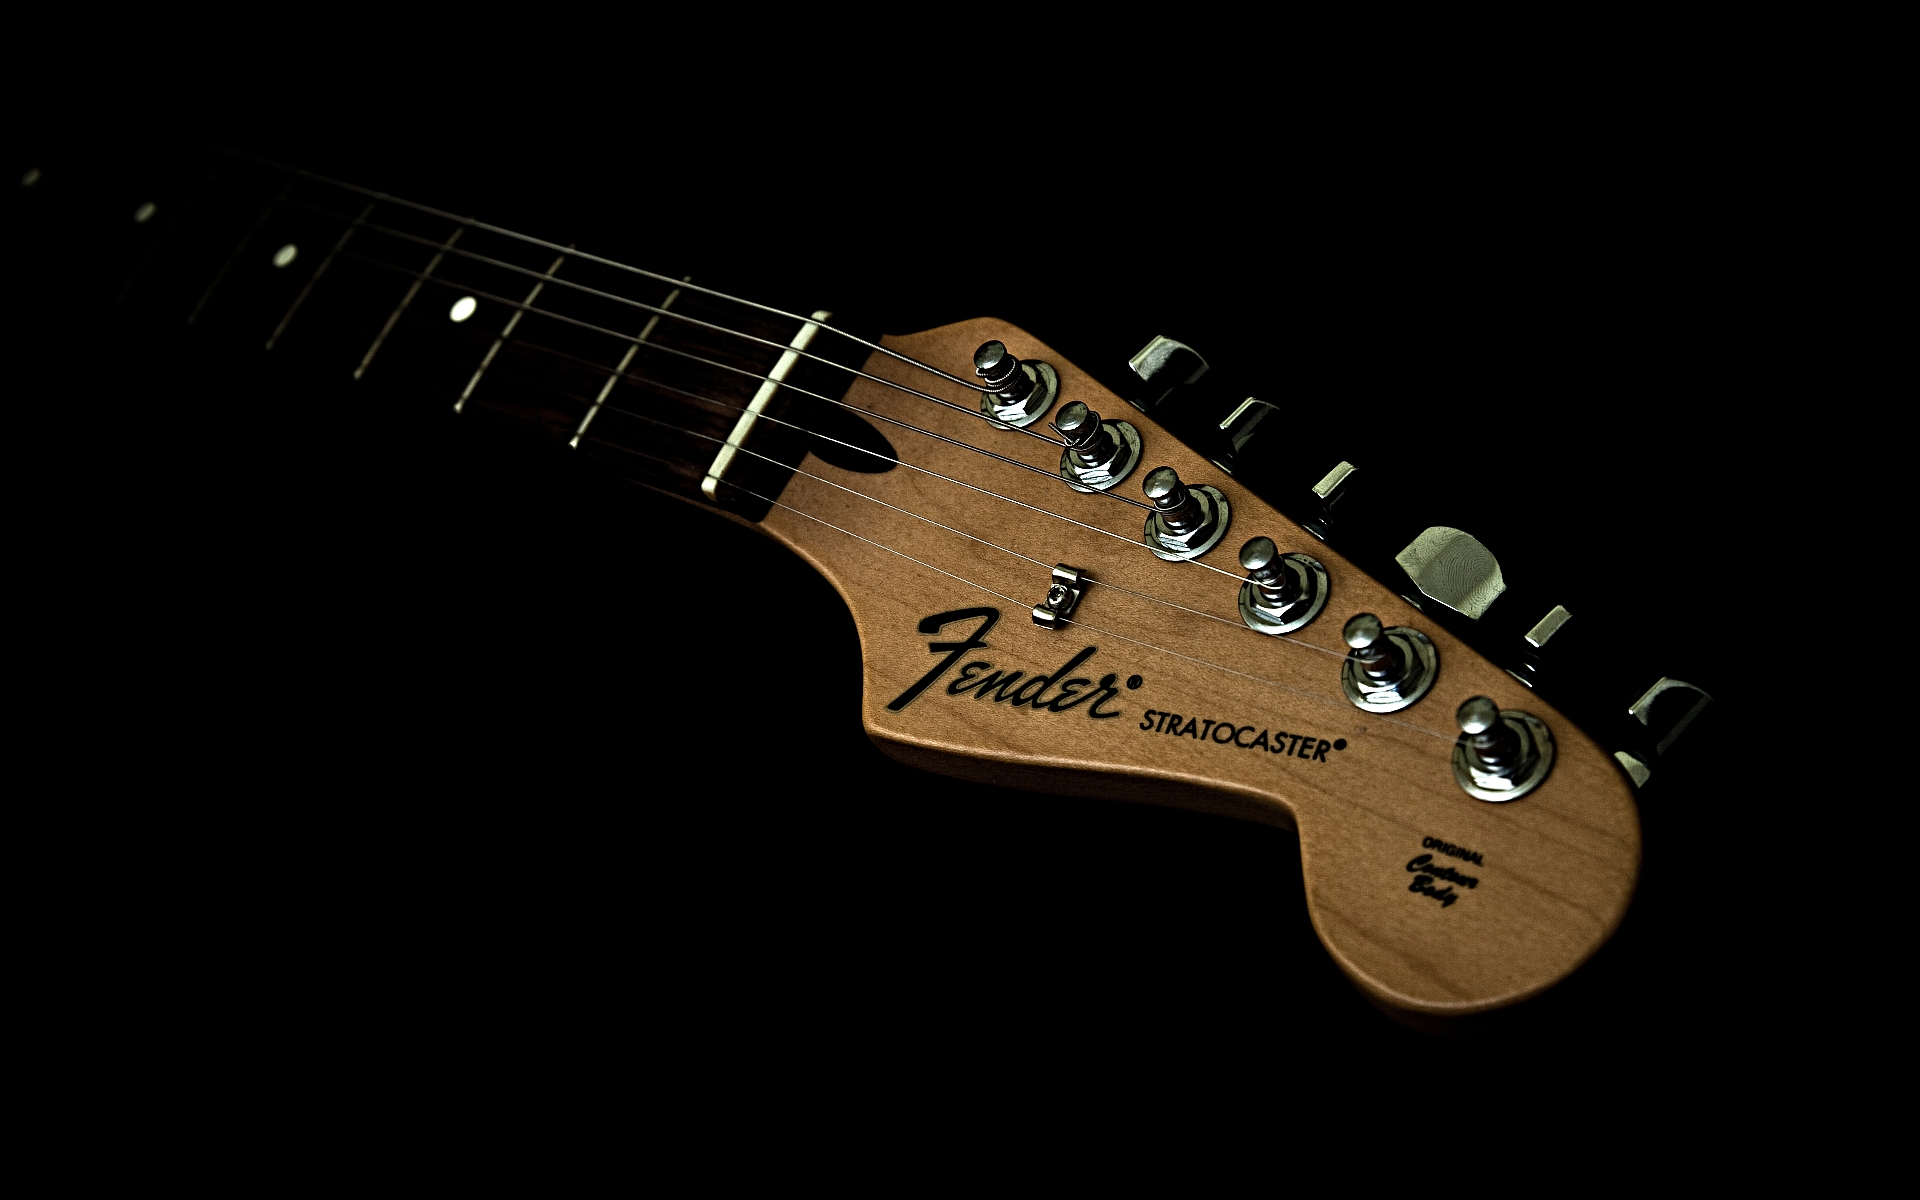 Les Paul Vs Fender Wallpaper